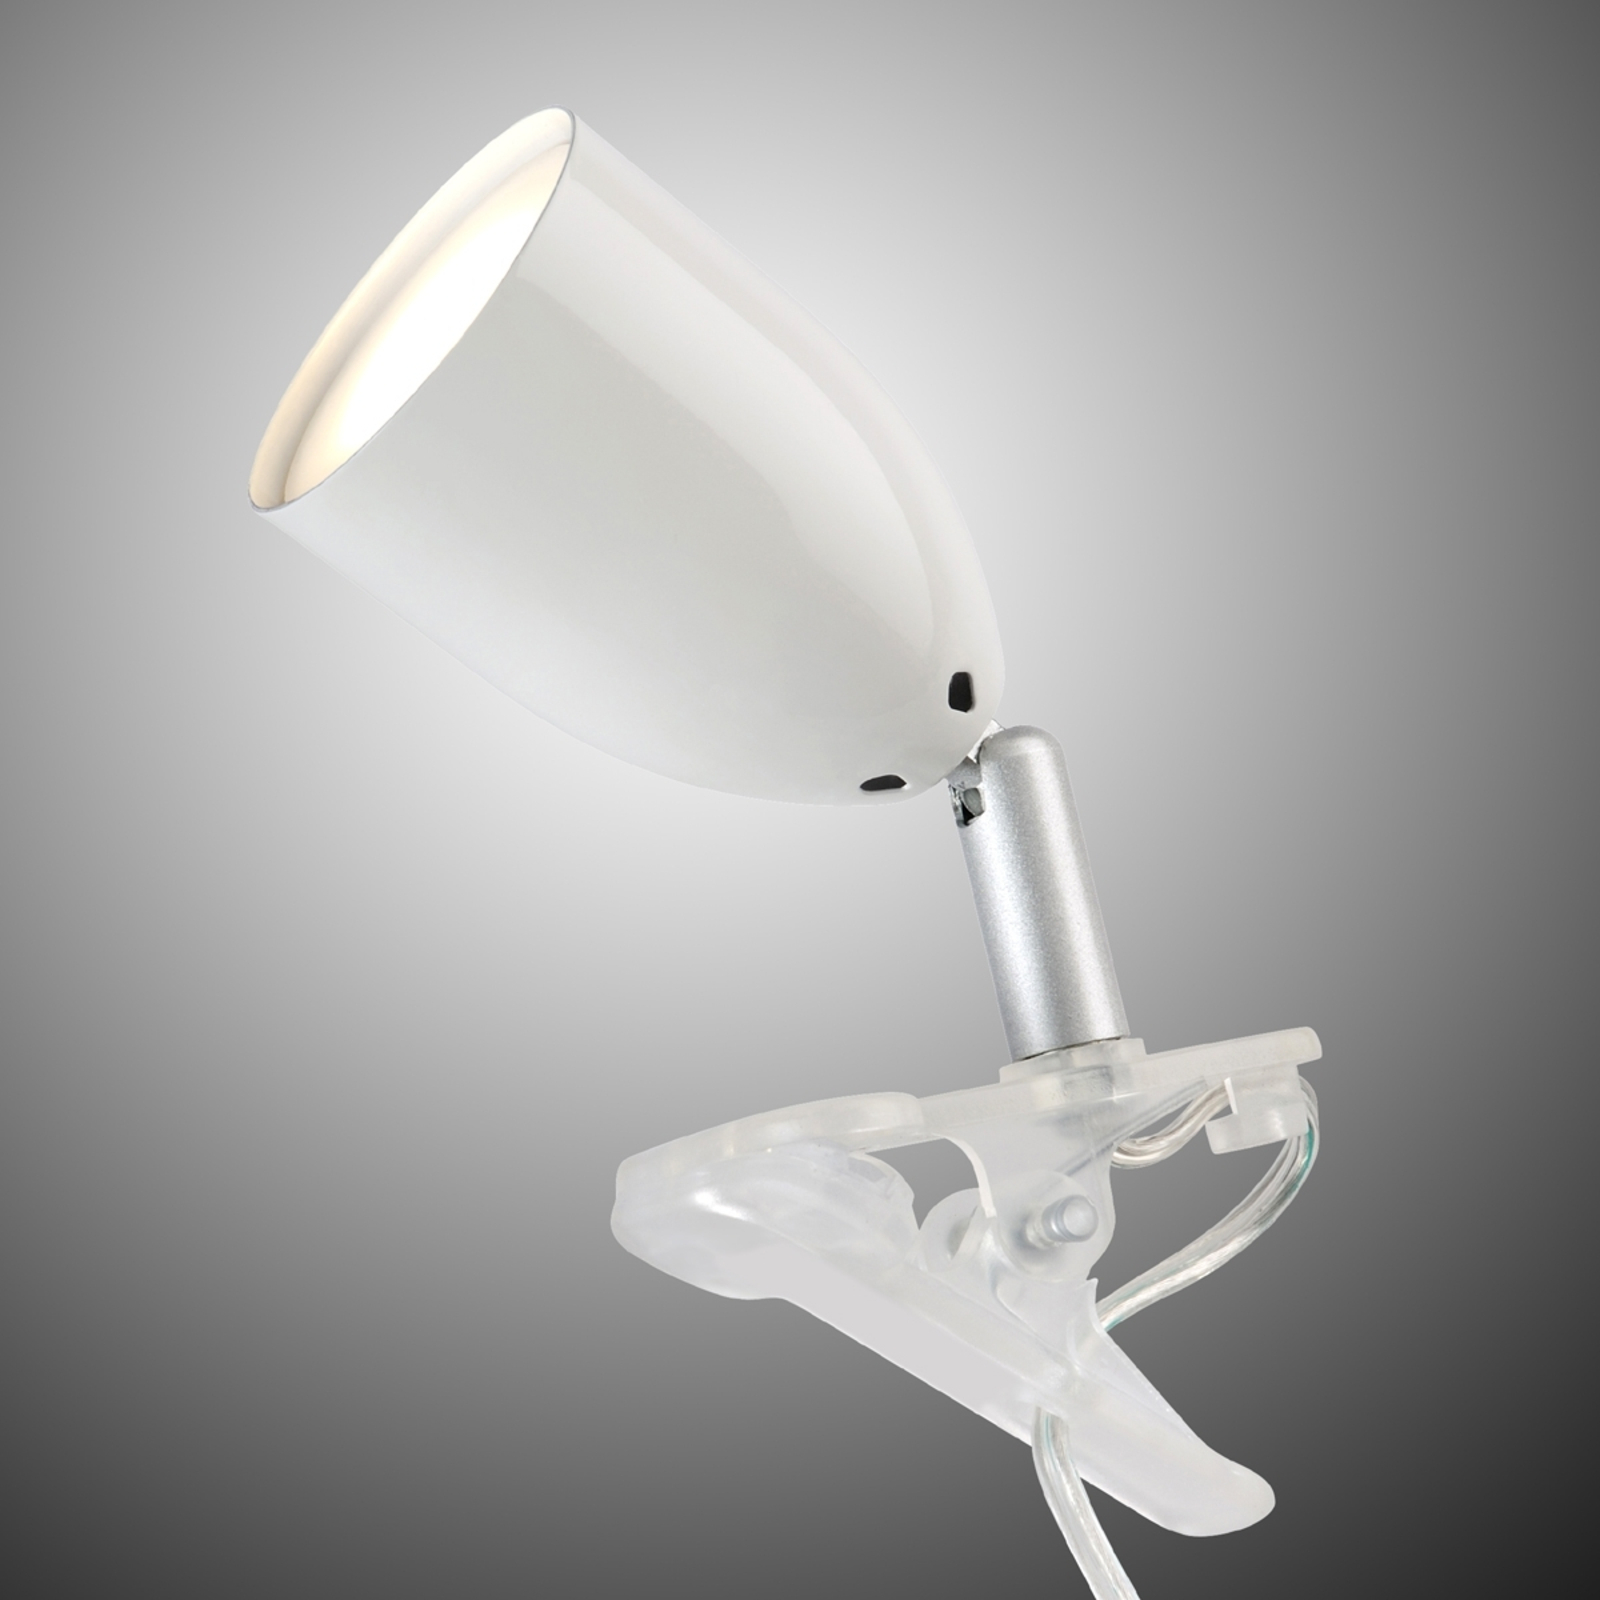 Moderno flexo LED con pinza de agarre LEO, blanco